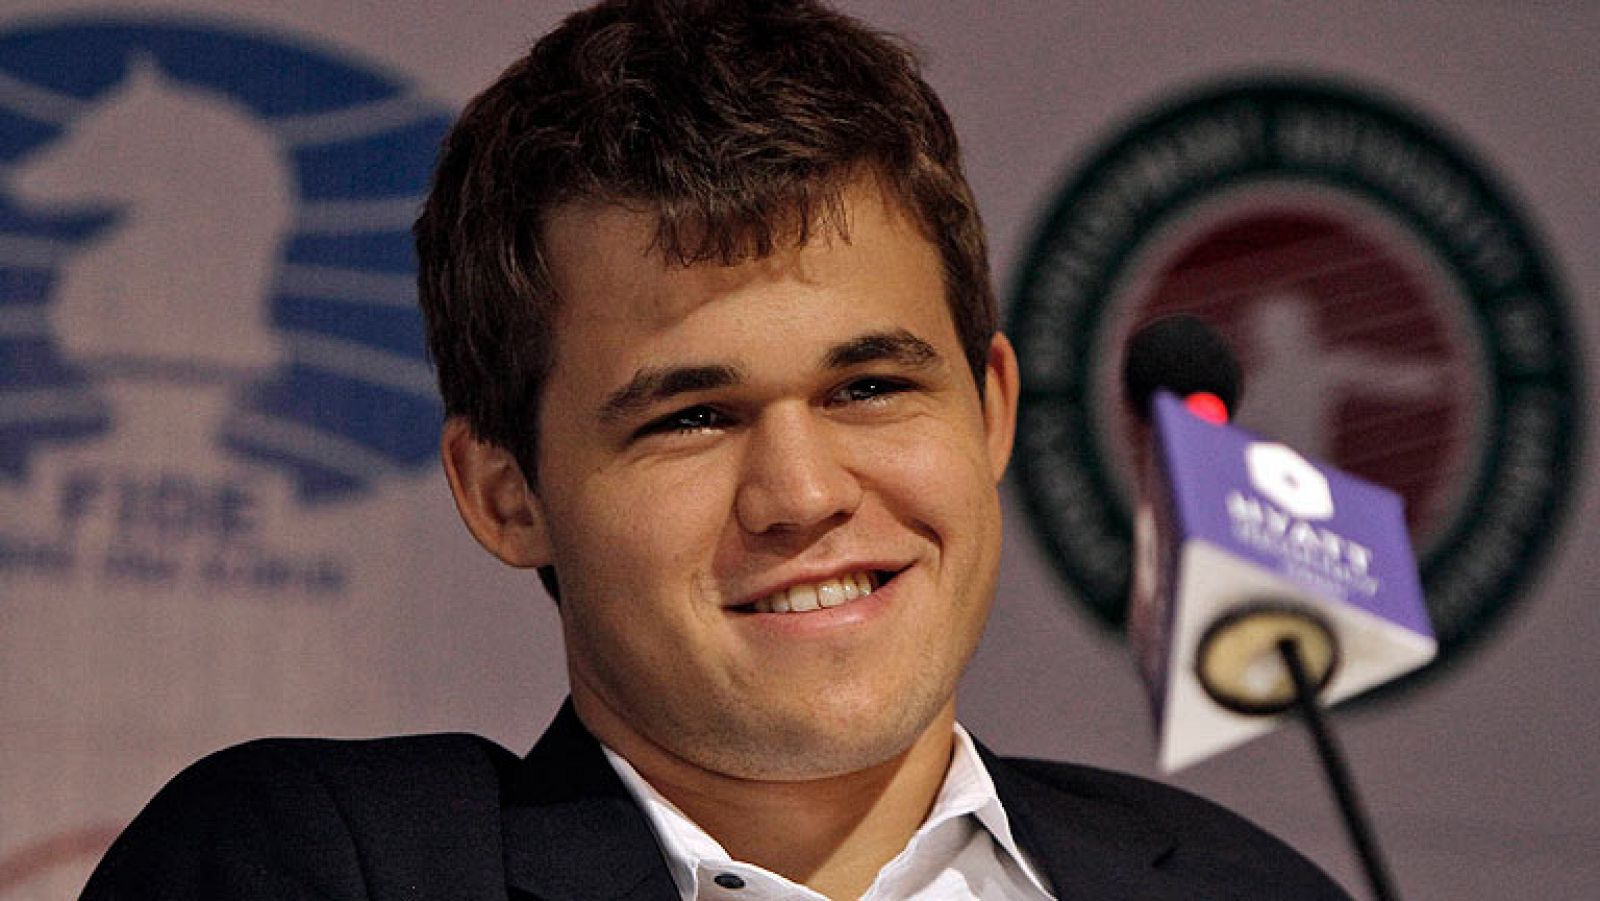 El noruego Magnus Carlsen se ha proclamado campeón del mundo de ajedrez al derrotar al hasta ahora dominador Anand.